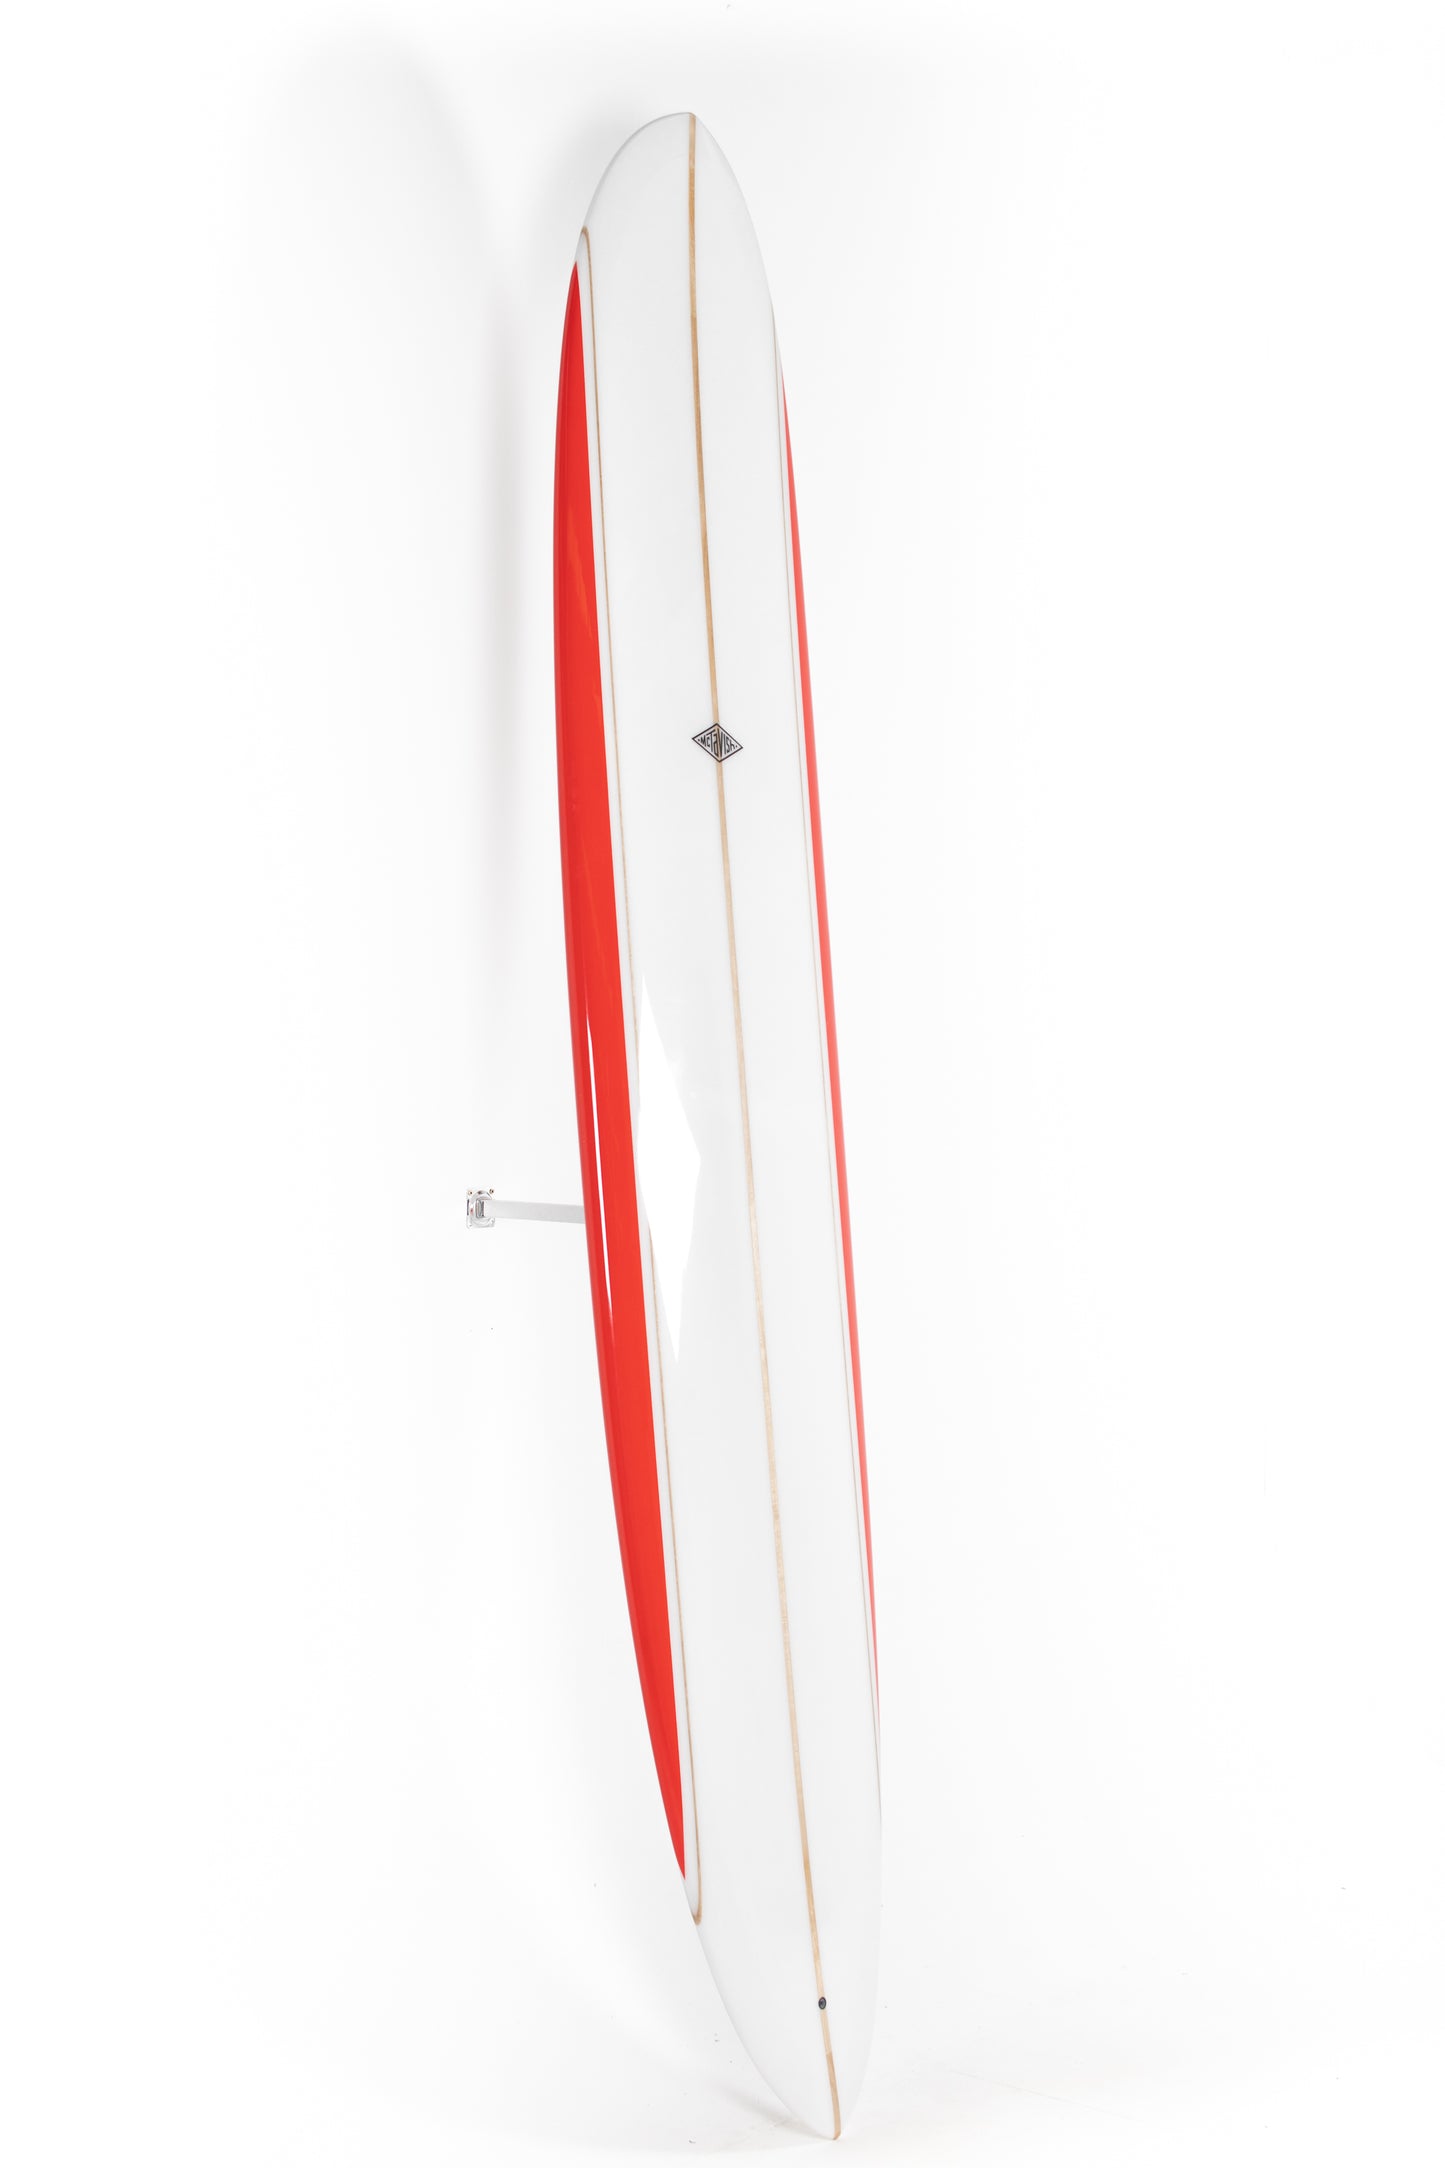 
                  
                    Pukas Surf Shop - McTavish Surfboard - PINNACLE by Bob McTavish - 9'4" x 23 x 2 7/8 - BM00782
                  
                